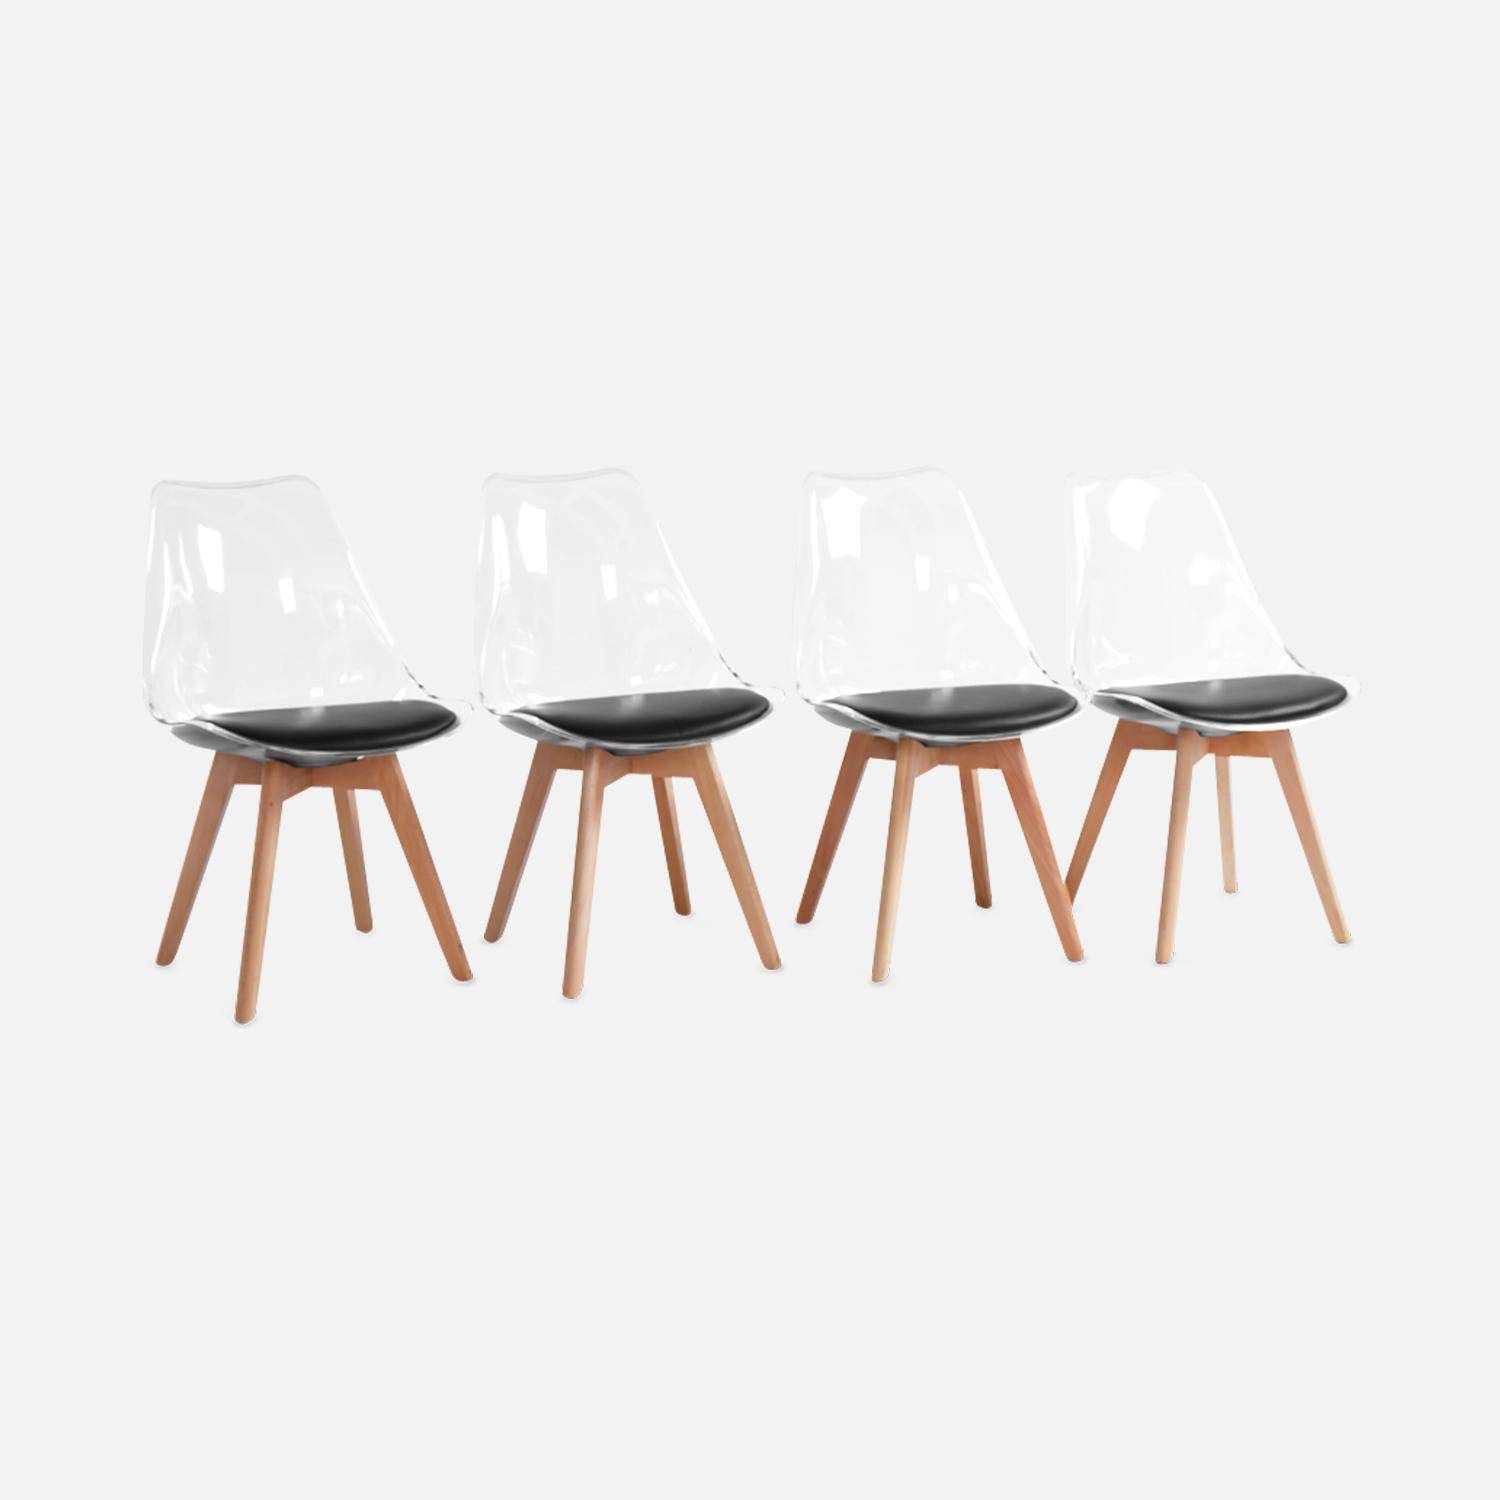 4er Set Stühle im skandinavischen Stil - Lagertha - Holzbeine, Ein Sitz, schwarzes Kissen, transparente Sitzschale Photo3